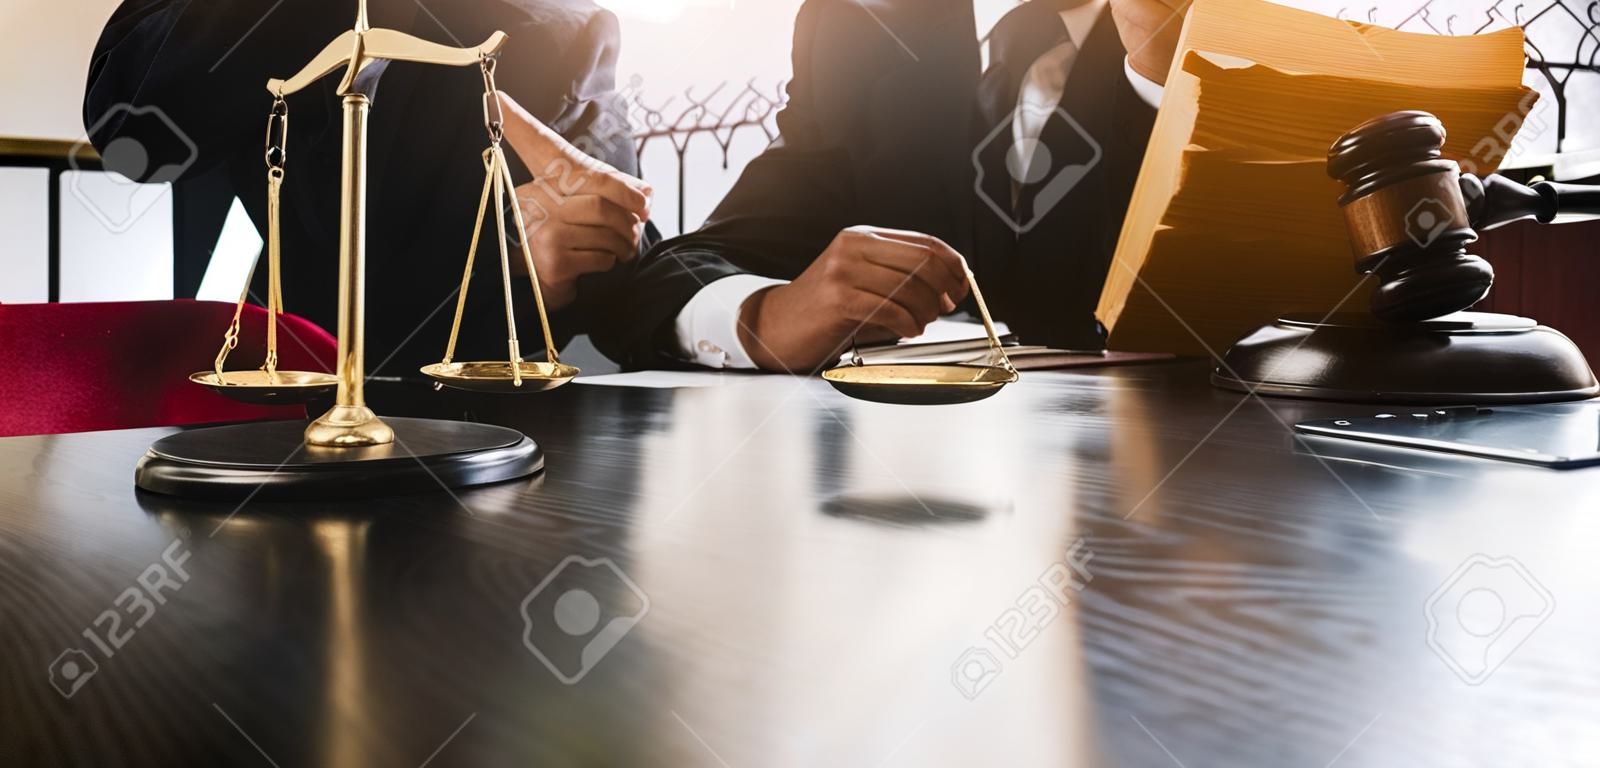 Koncepcja sprawiedliwości i prawa. sędzia płci męskiej na sali sądowej na drewnianym stole i doradca lub prawnik pracujący w biurze. koncepcja prawa, porad i sprawiedliwości.